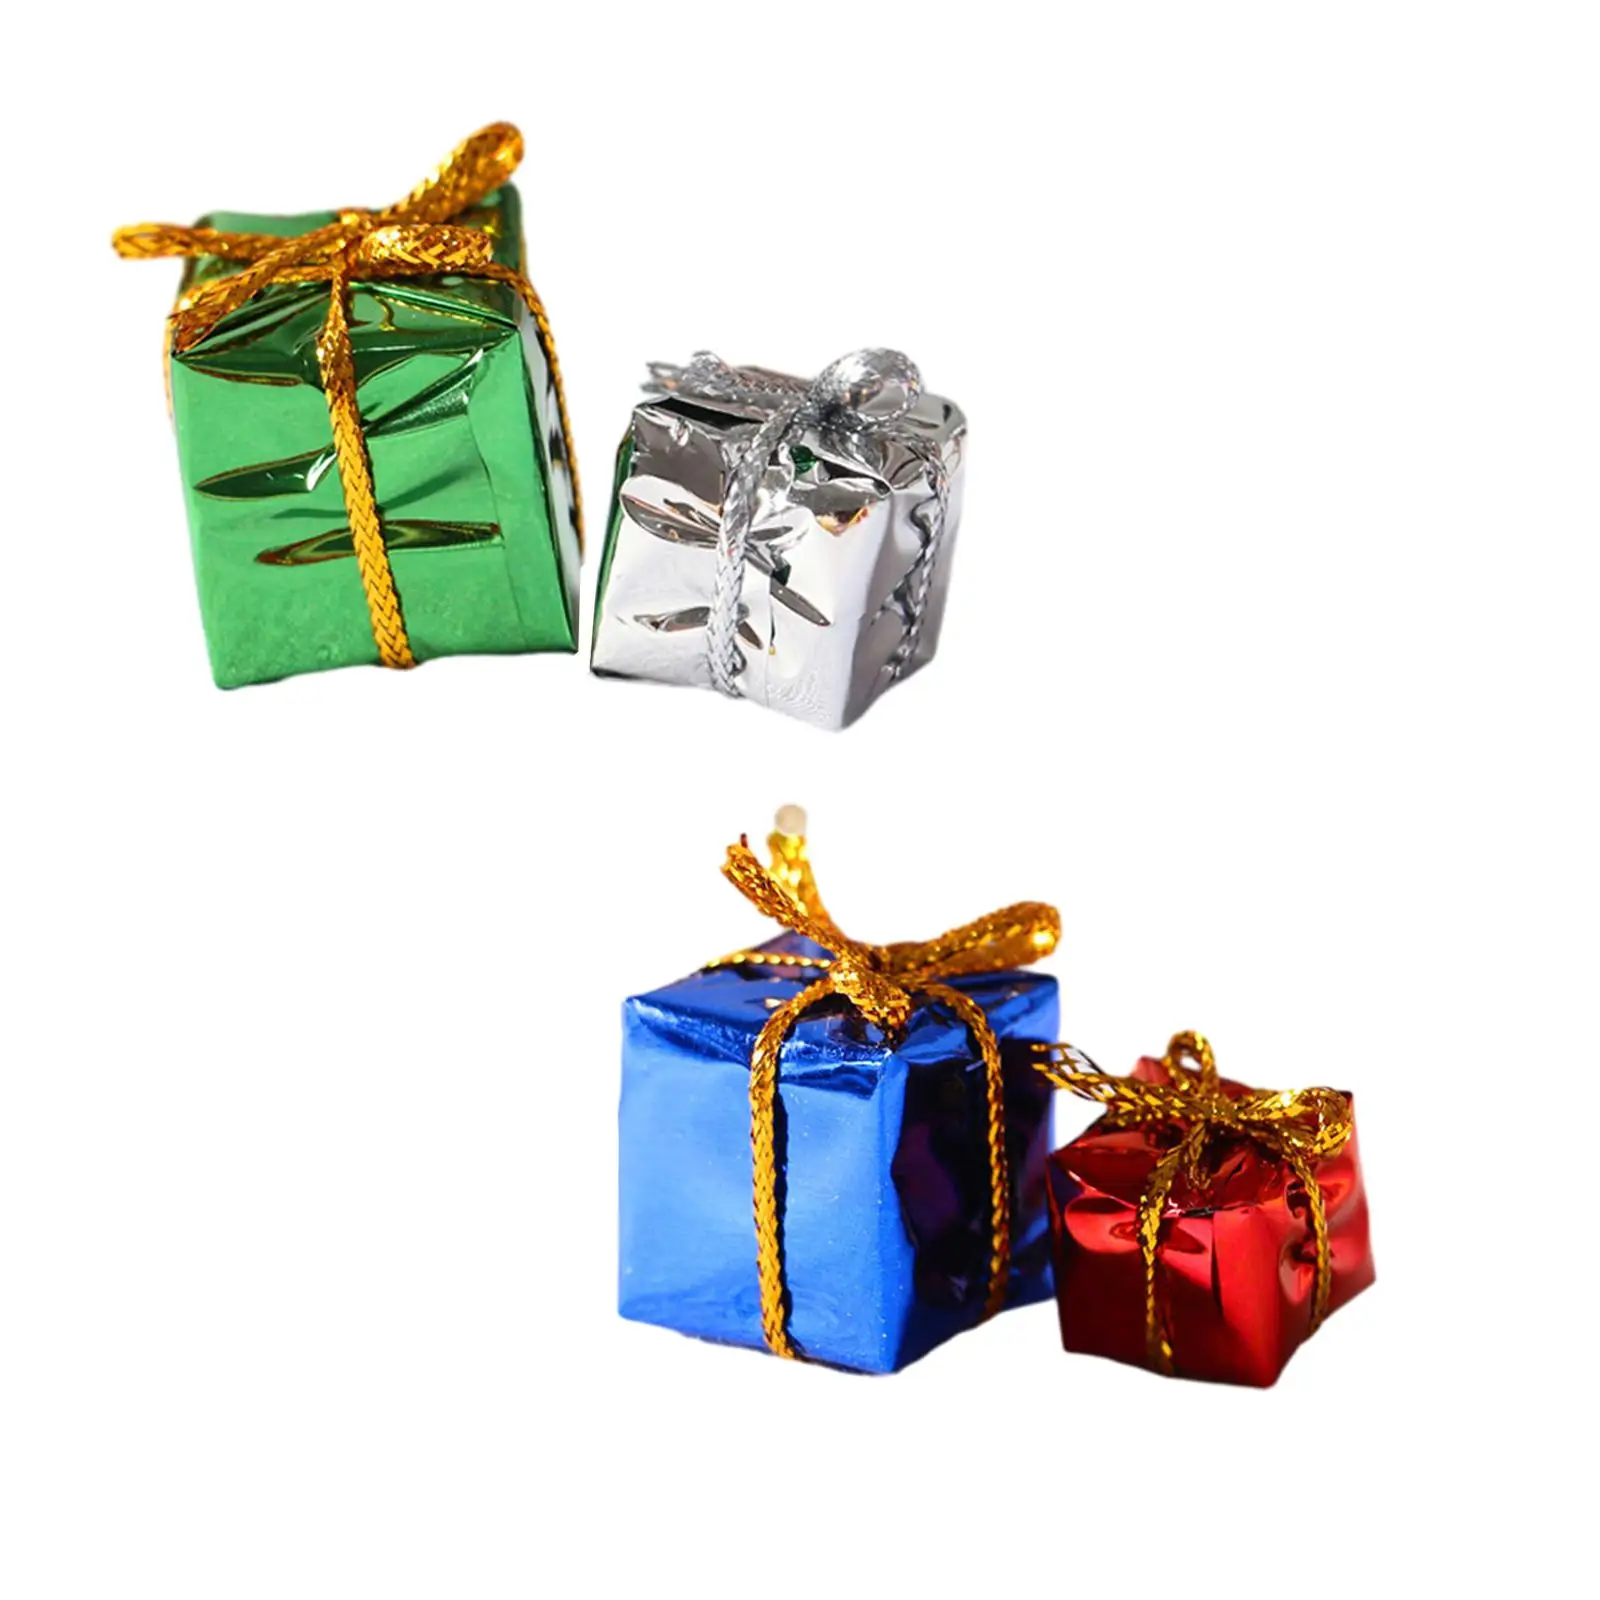 

2 шт., коробки для новогодней ёлки для кукольного домика, украшения для новогодней ёлки, Подарочные мини-коробки для кукольного домика, масштаб 1:12